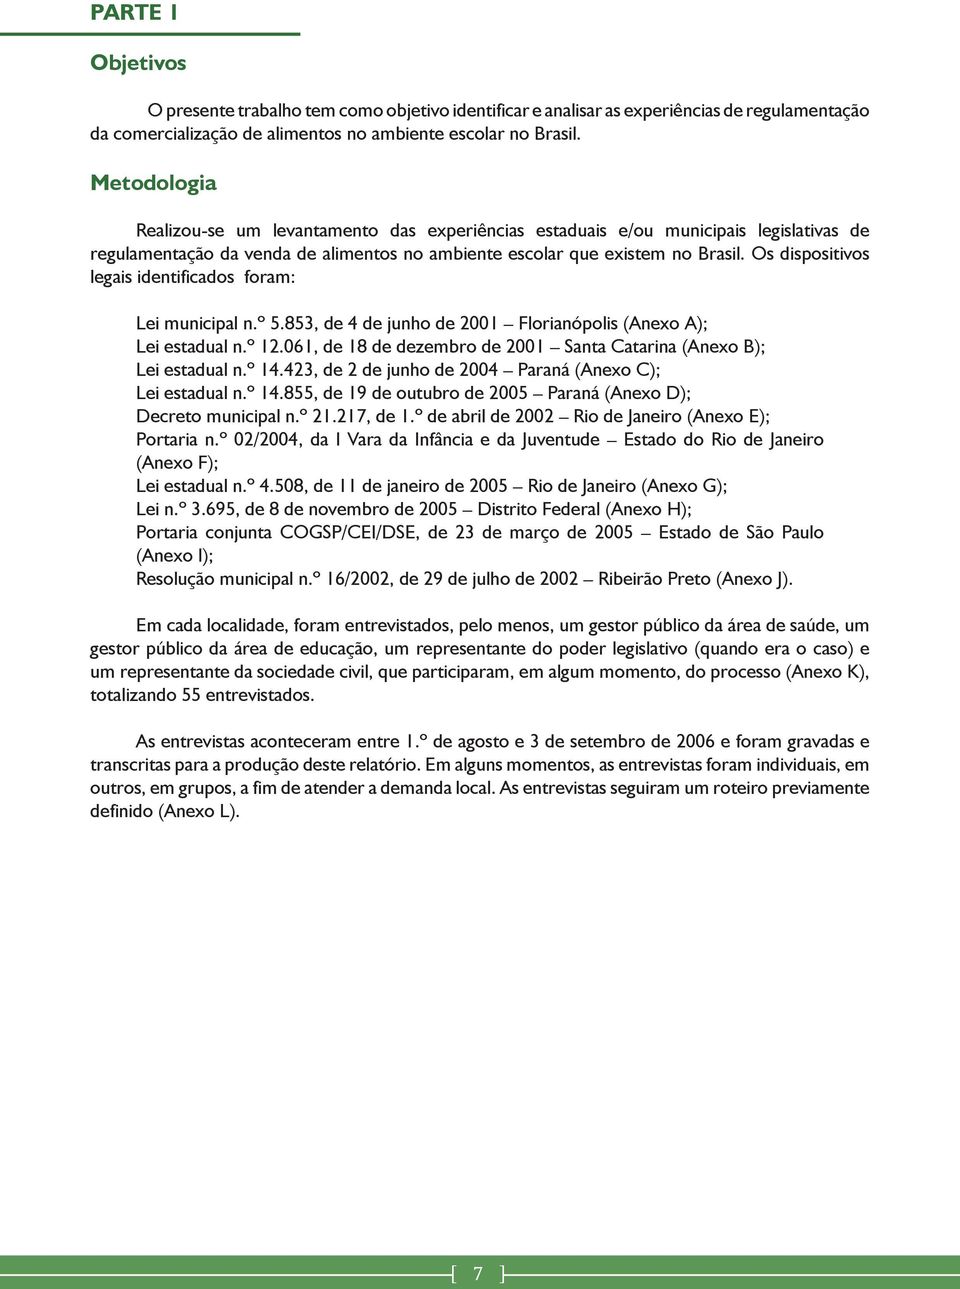 Os dispositivos legais identificados foram: Lei municipal n.º 5.853, de 4 de junho de 2001 Florianópolis (Anexo A); Lei estadual n.º 12.